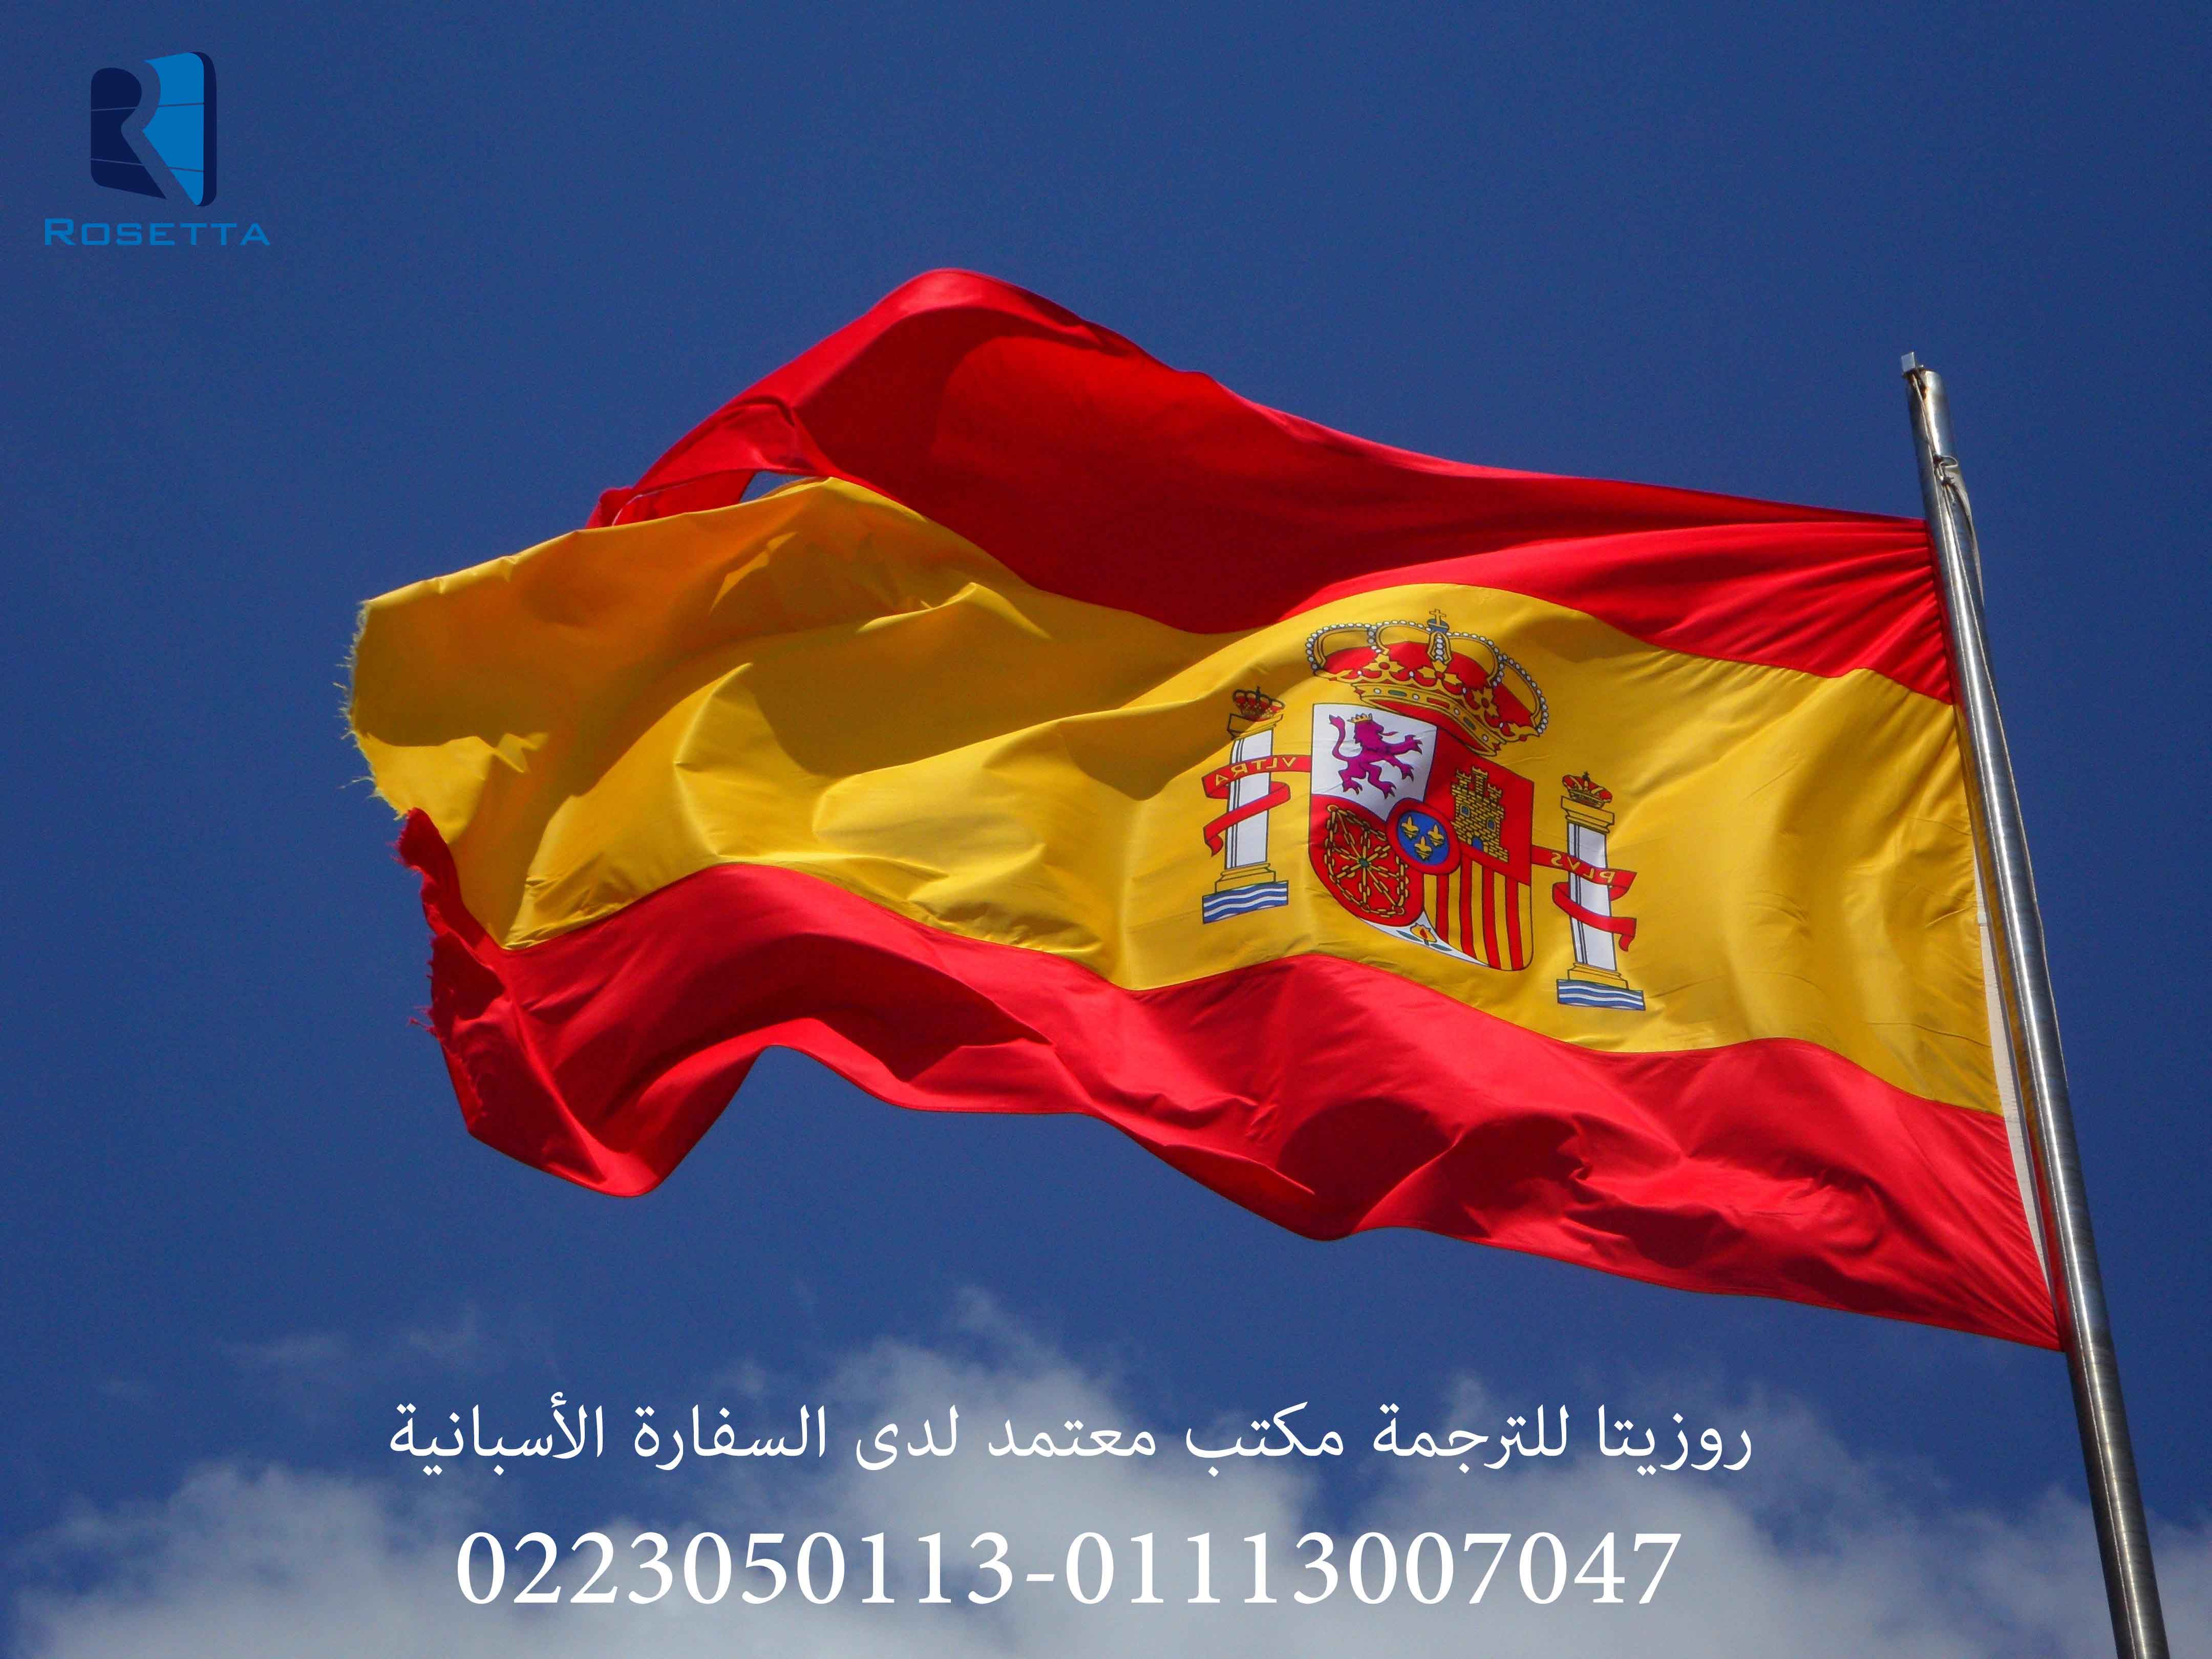 مكتب ترجمة معتمدة من السفارة الاسبانية